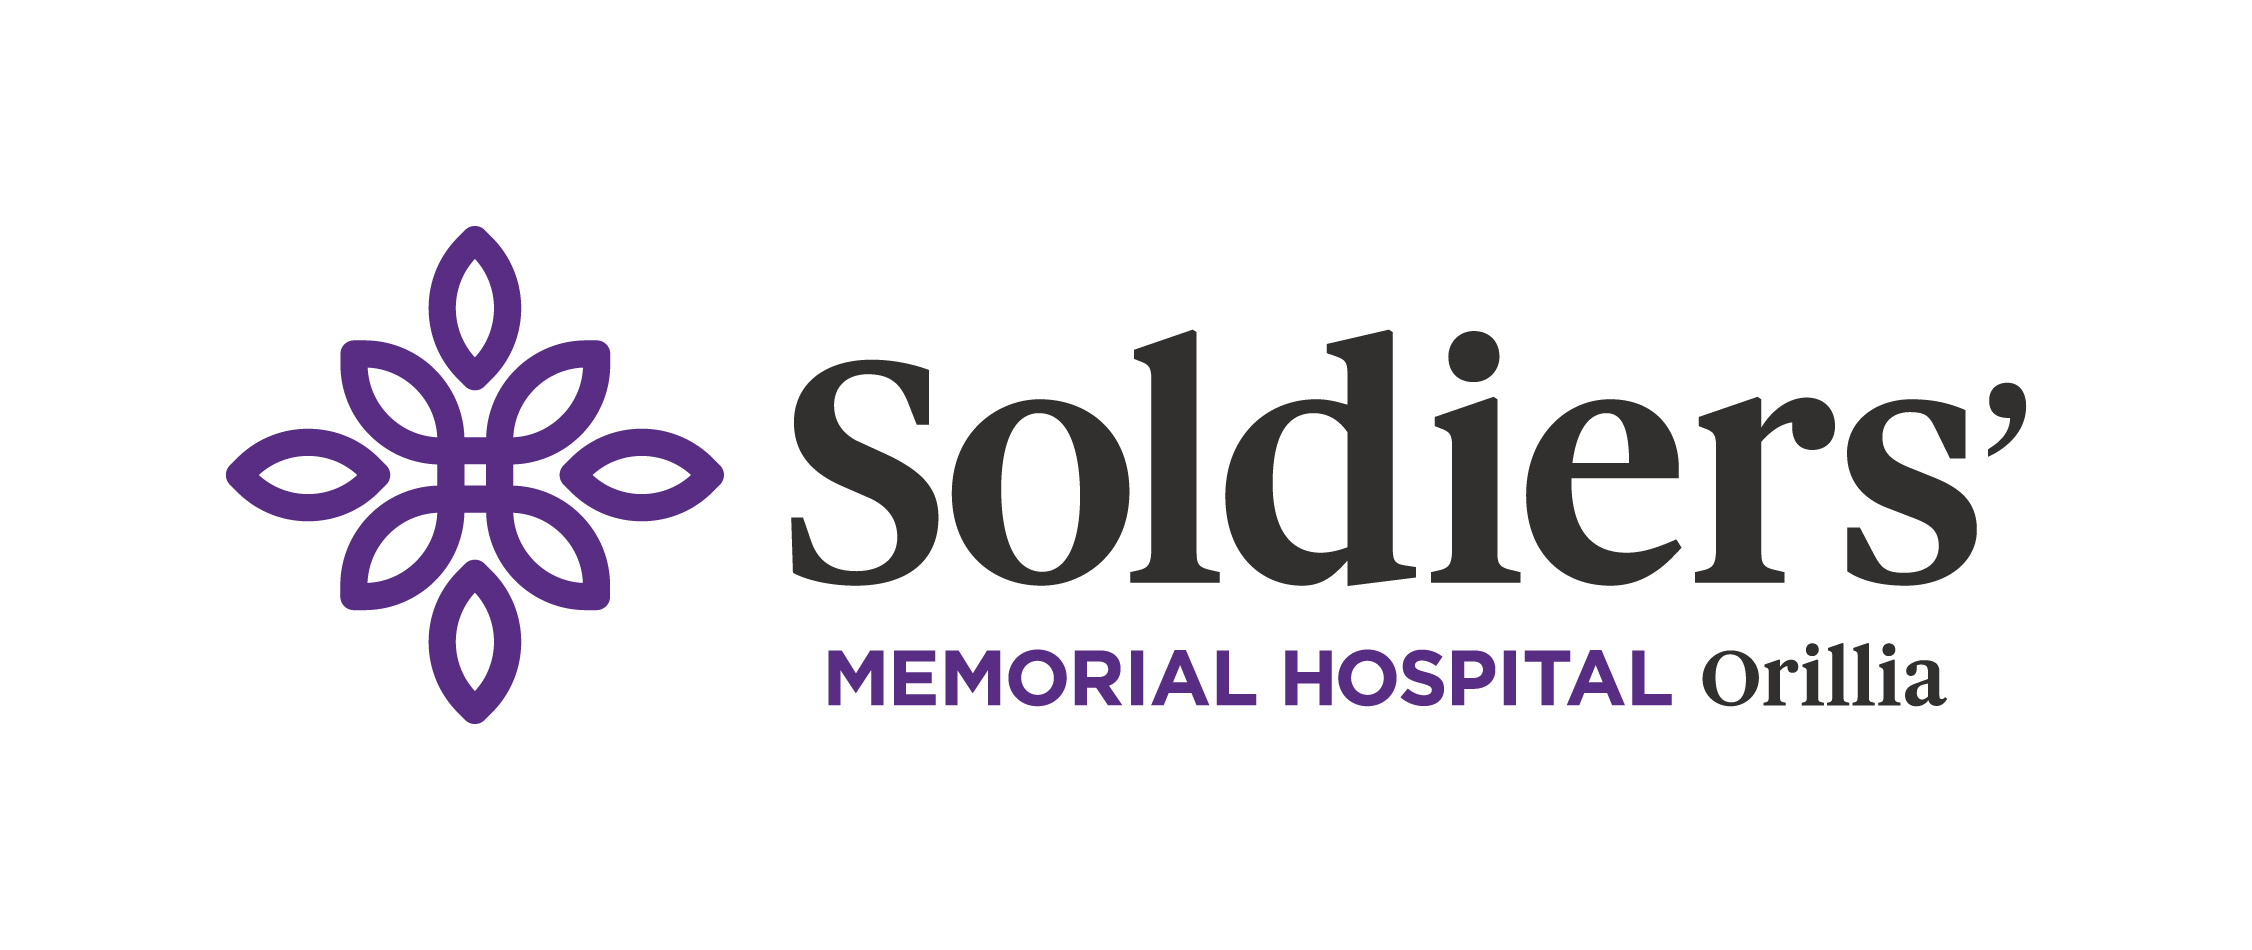 Orillia Soldiers Memorial Hospital